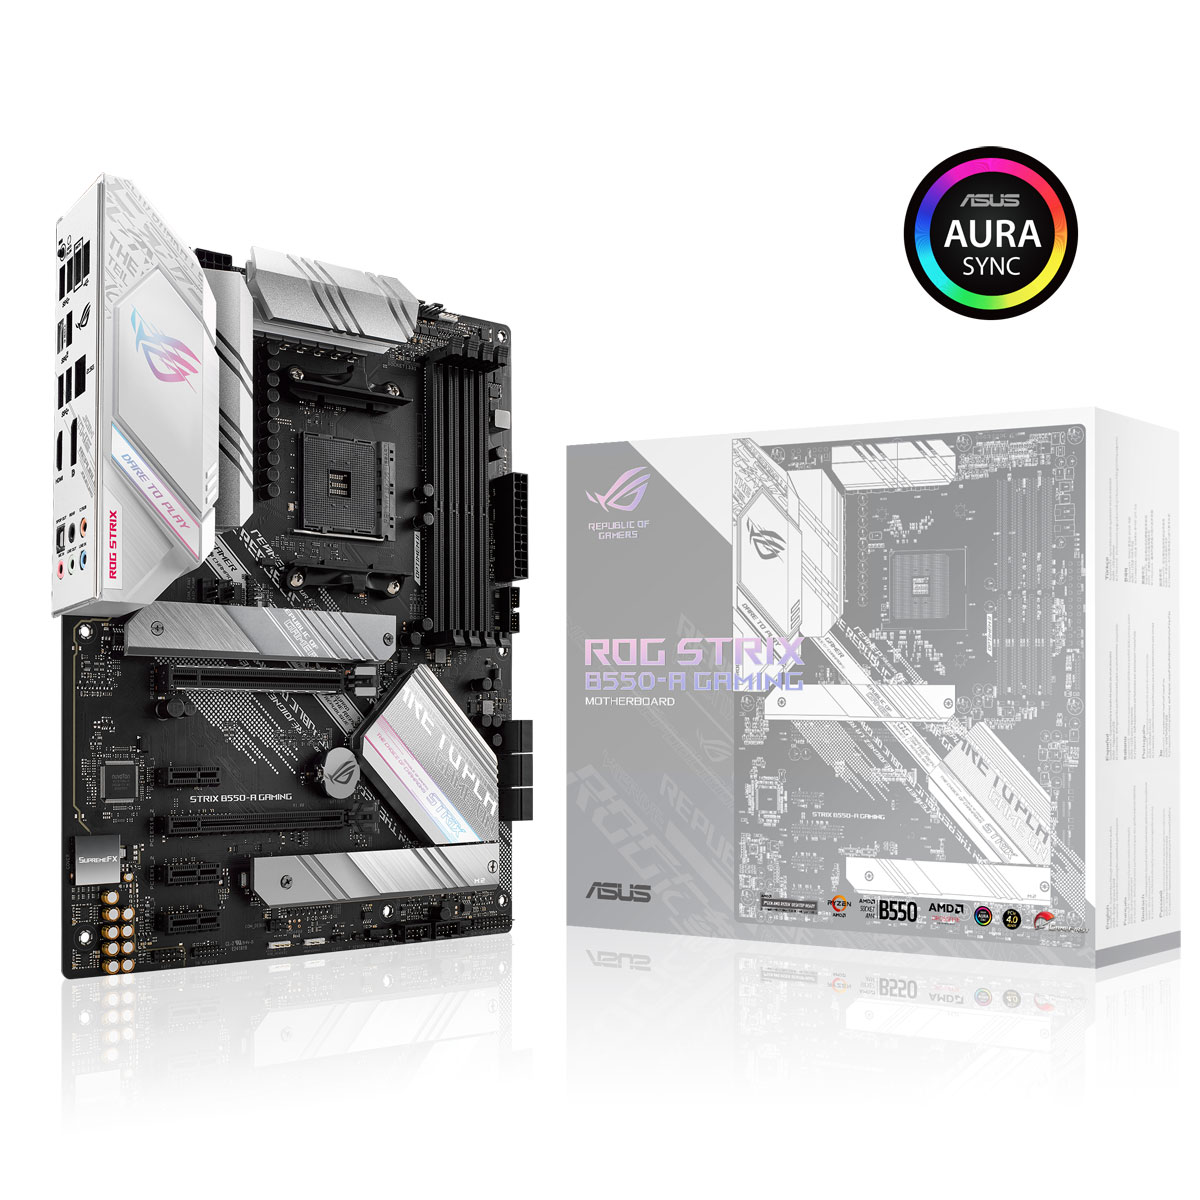 Asus - Asus ROG STRIX B550-A GAMING (AMD AM4) B550 ATX Motherboard